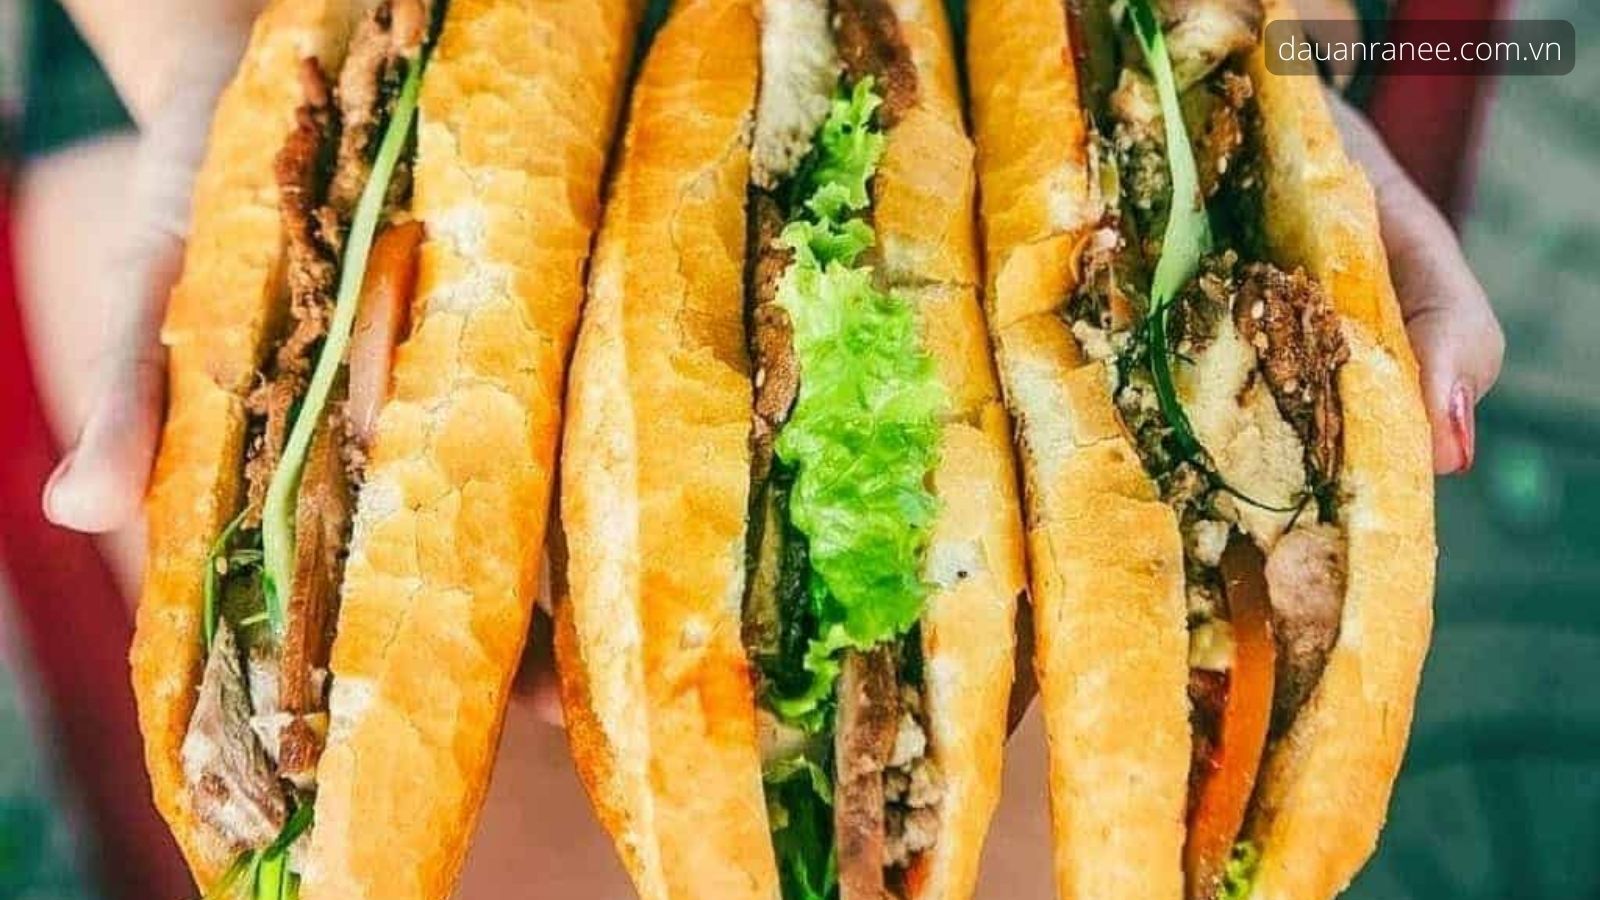 Đặc sản Nam Định – Bánh mì chân cầu